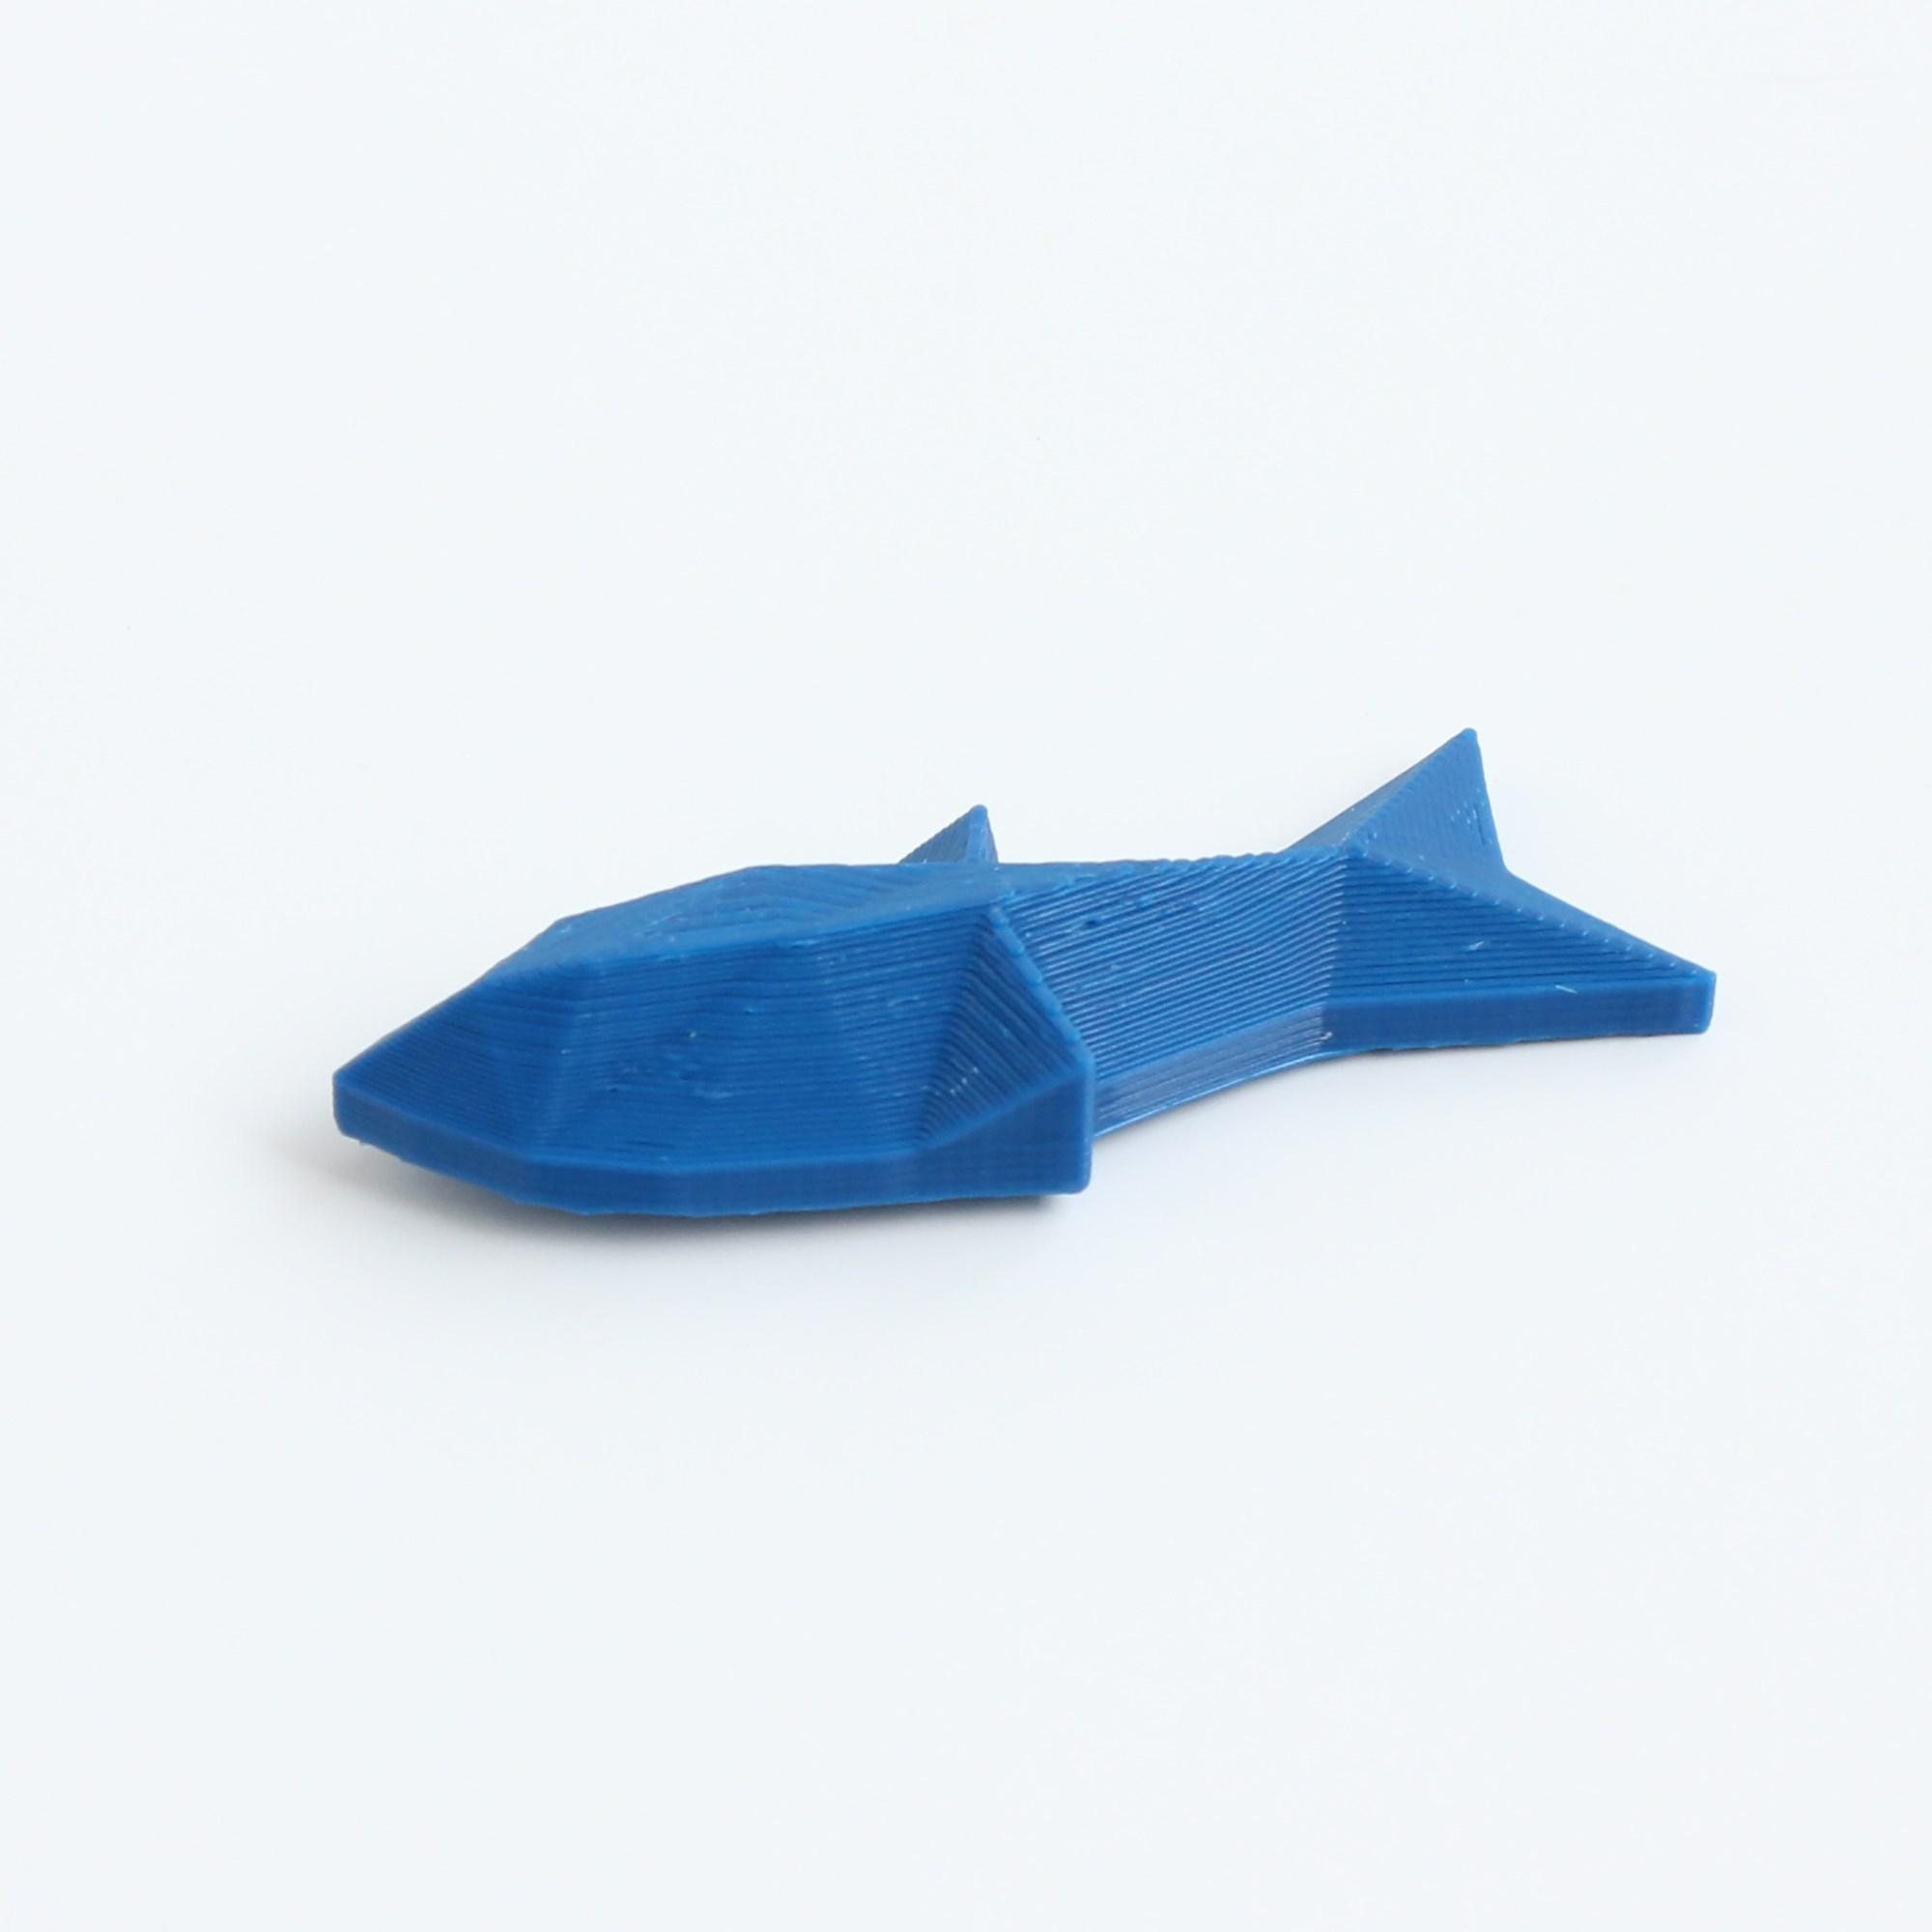 Изображение товара: Акула 3D печатная брошь, броши, Акула, глубокое море, дизайн акулы, синий